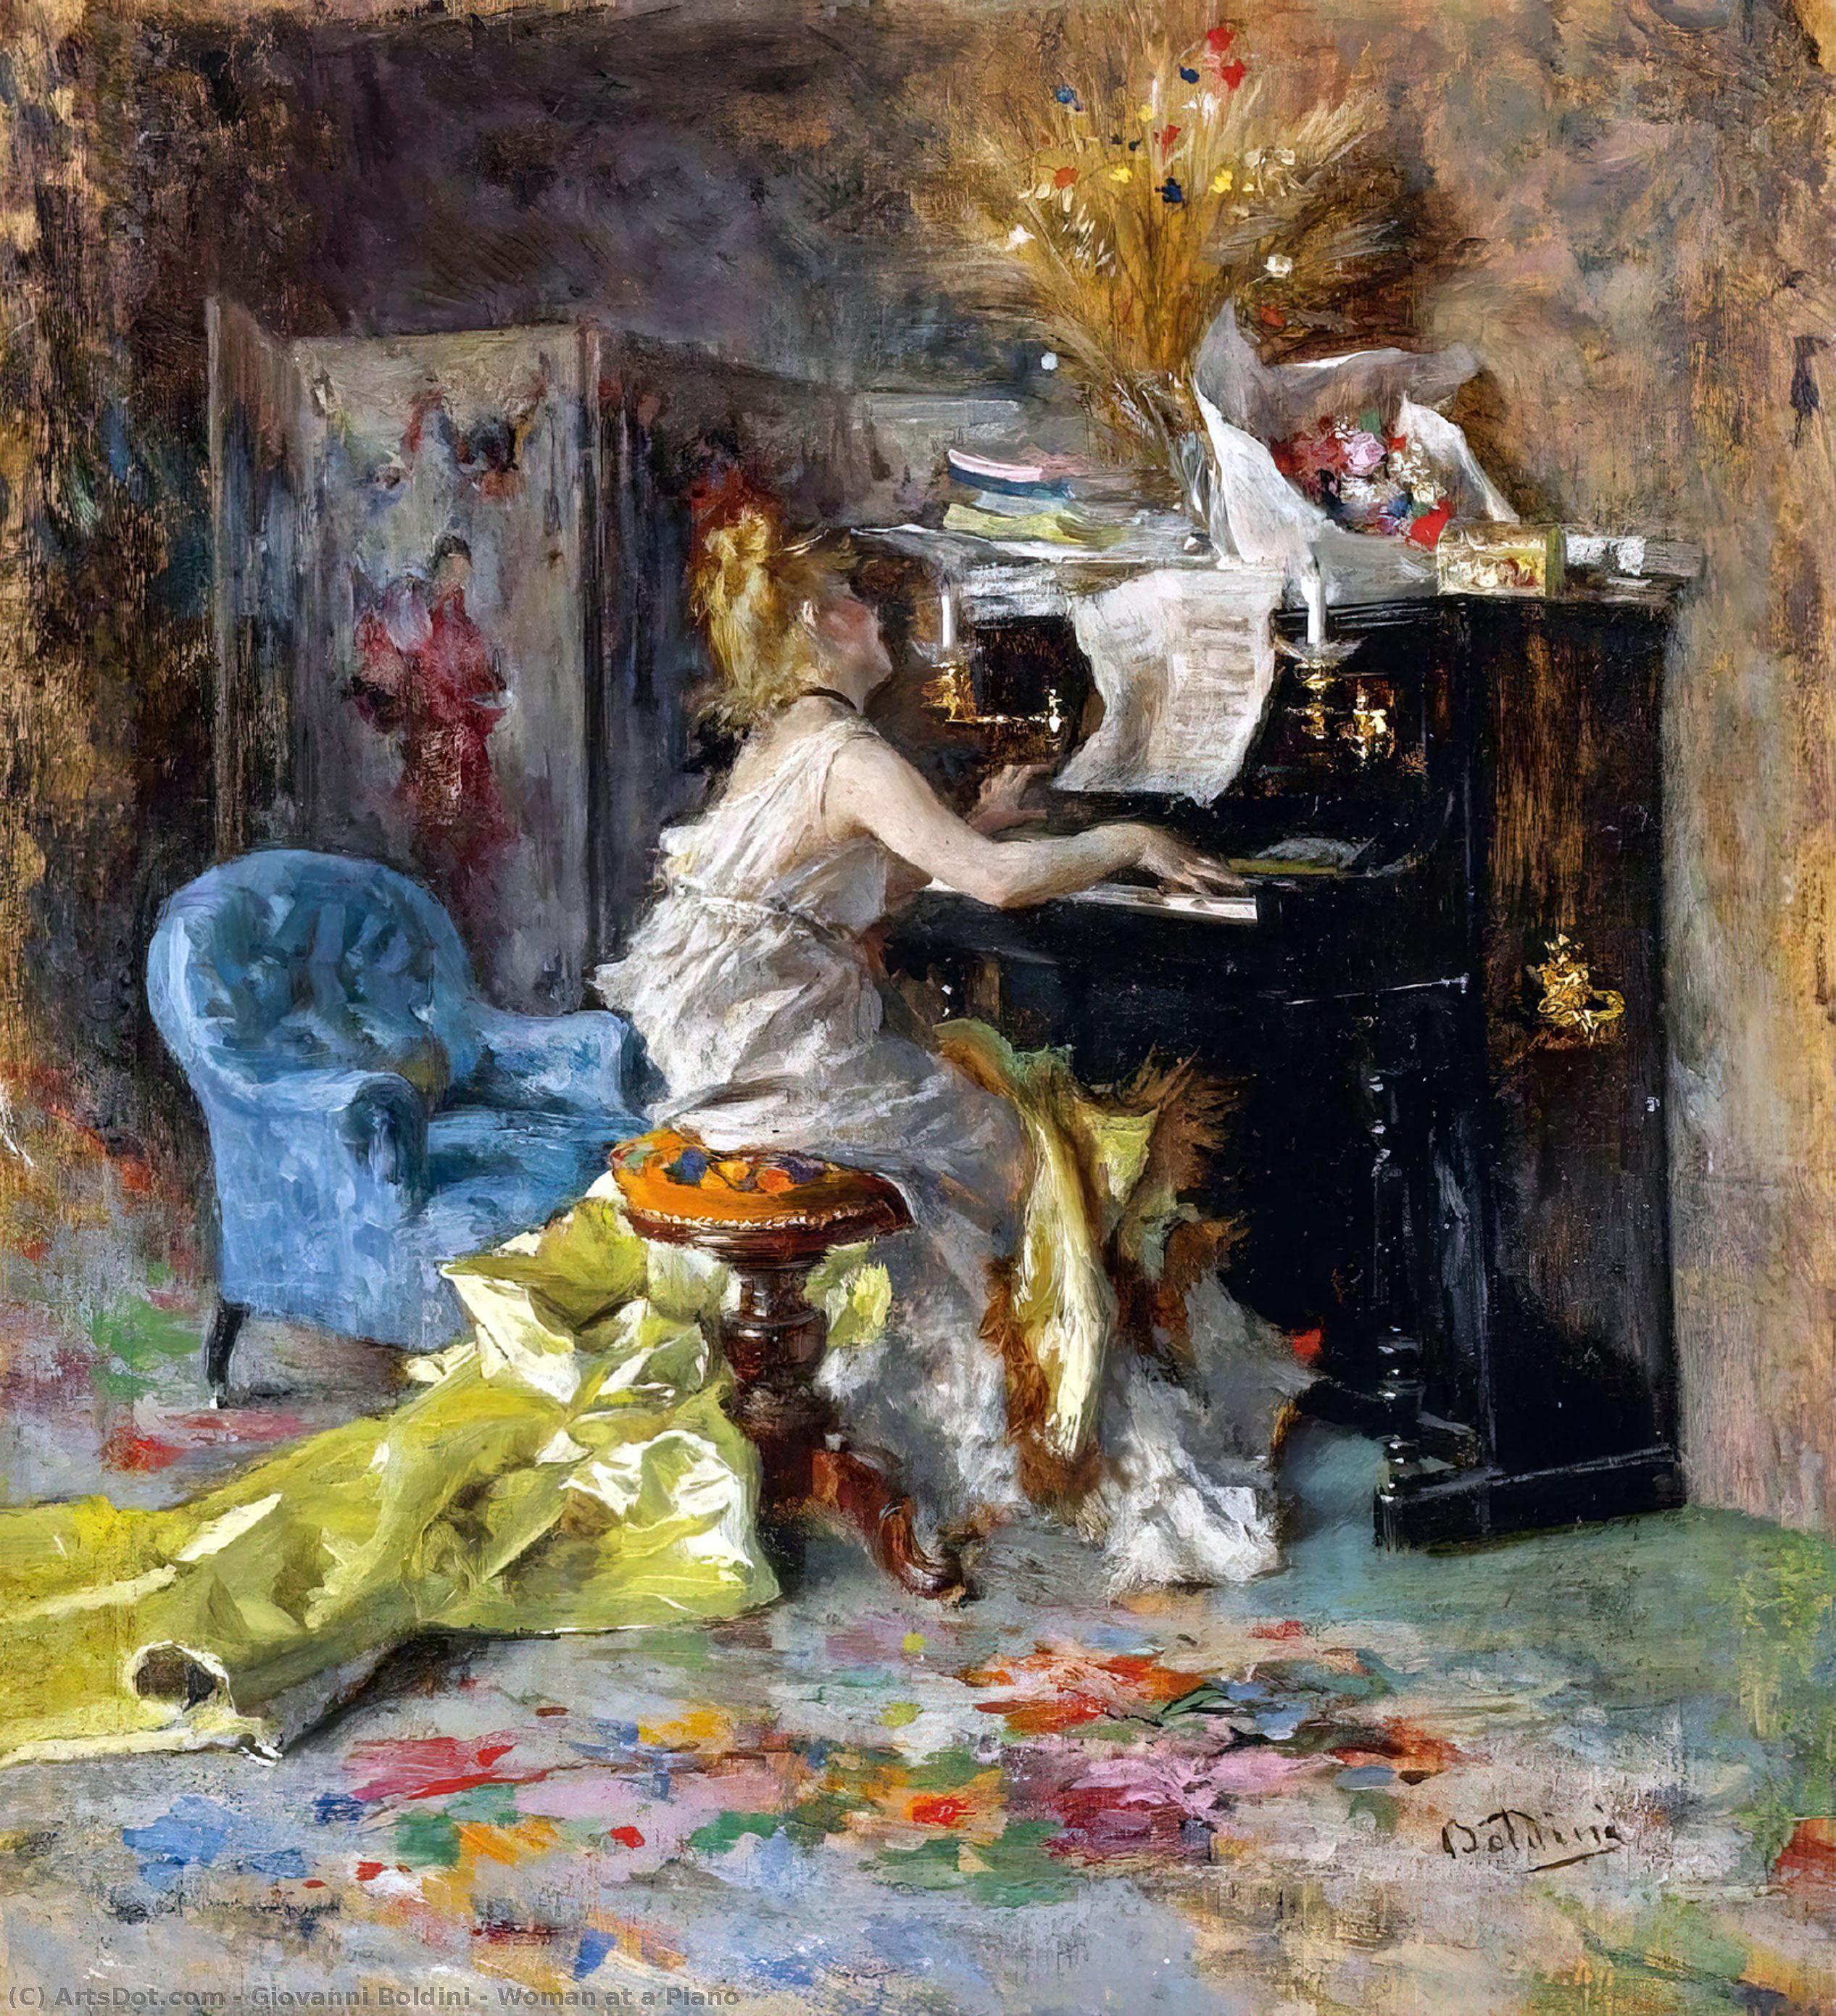 WikiOO.org - Encyclopedia of Fine Arts - Malba, Artwork Giovanni Boldini - Woman at a Piano